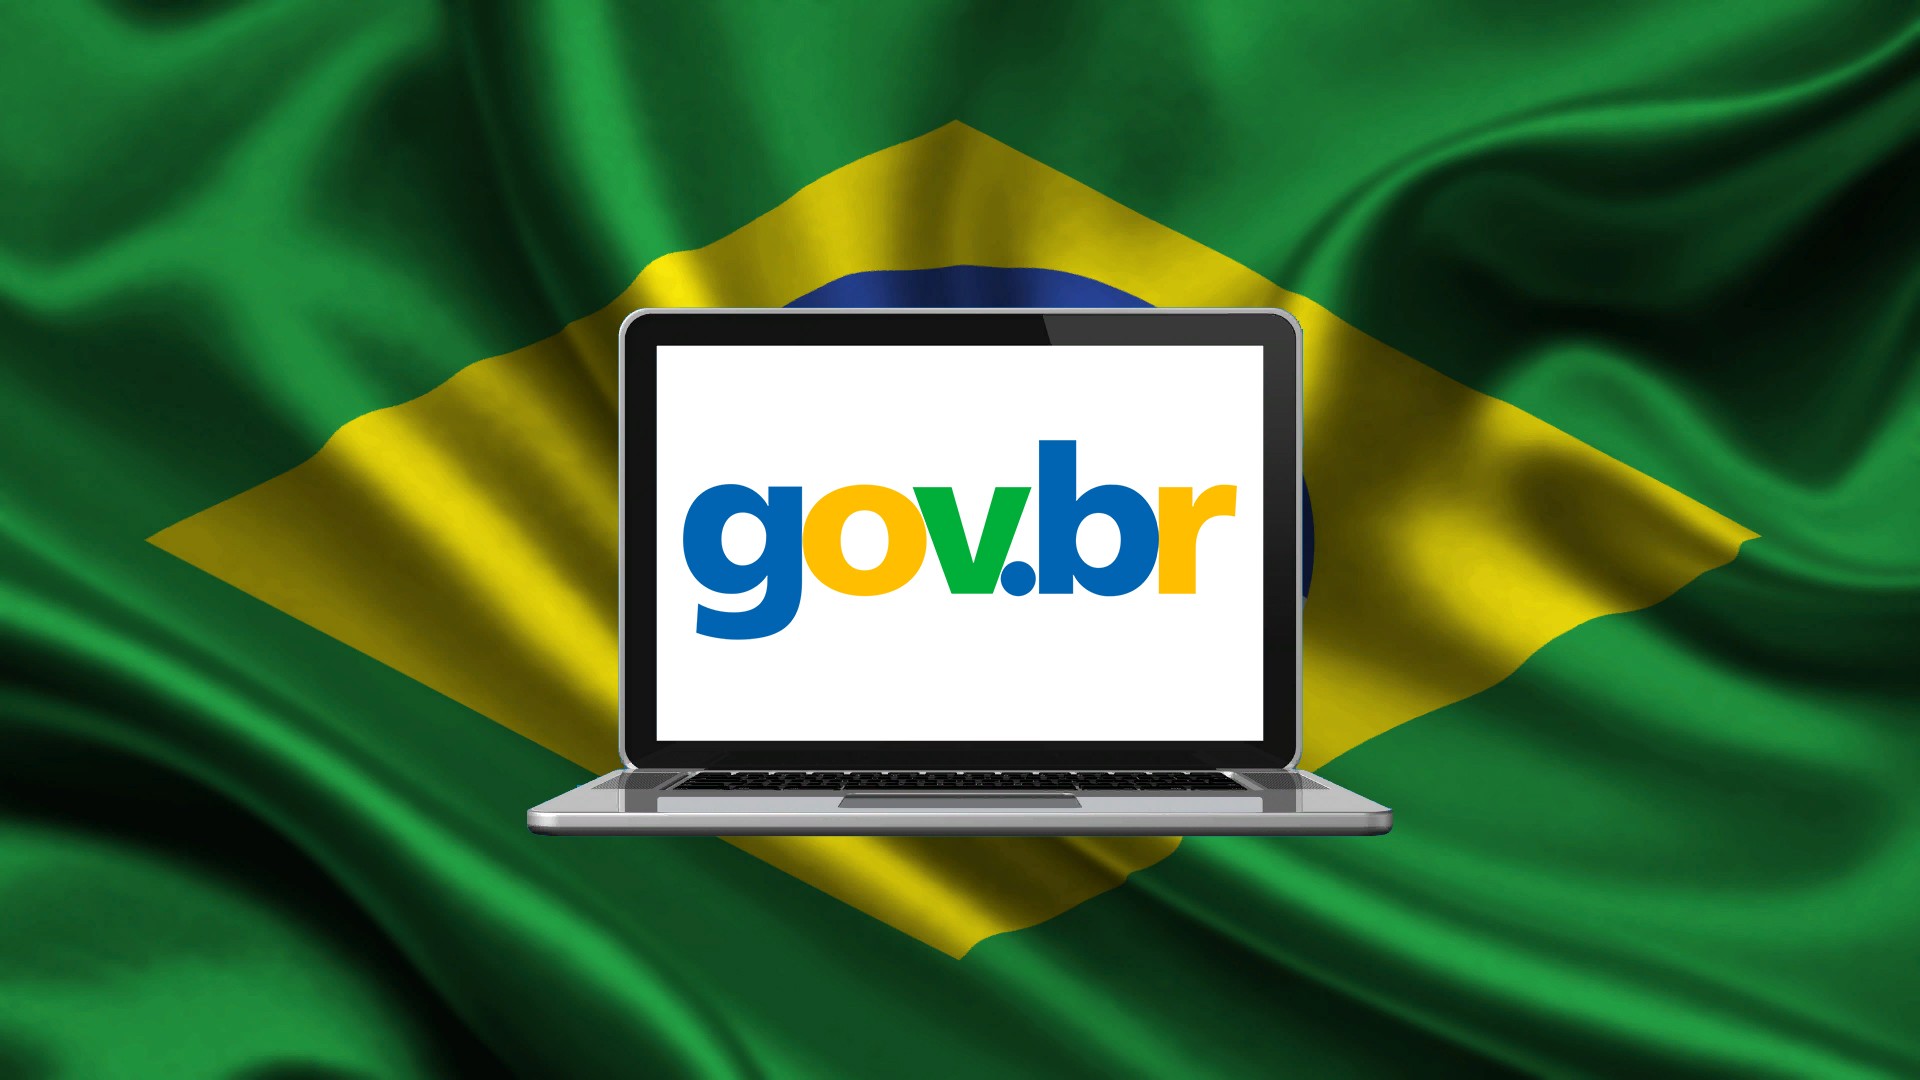 Idec afirma que acordo entre bancos e governo para validar dados no Gov.br pode violar LGPD